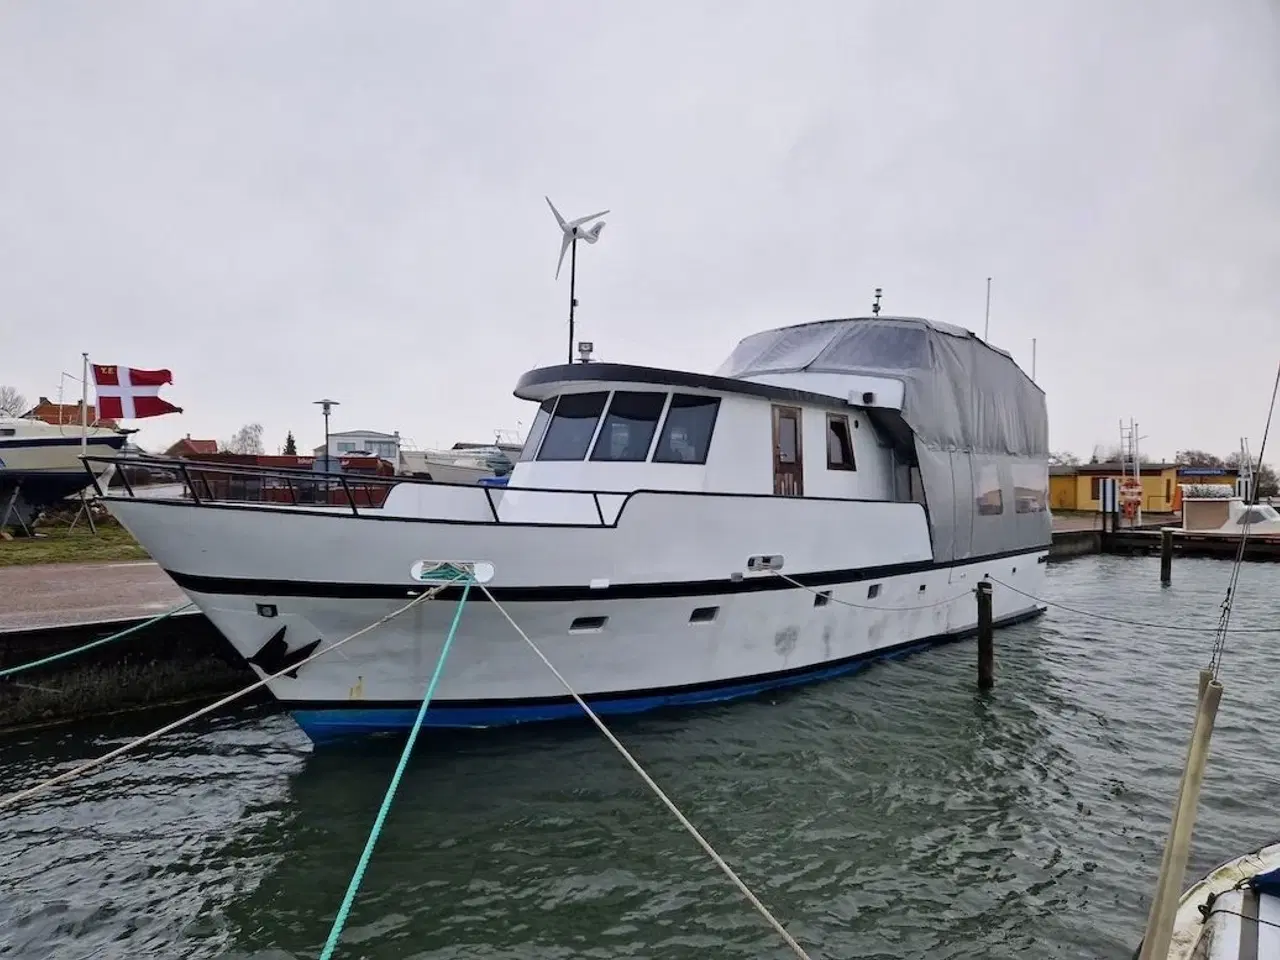 Billede 1 - Nautica S - Totalrenoveret beboelsesbåd/ husbåd - Søsat i 2020 - Klar til sejlads/beboelse